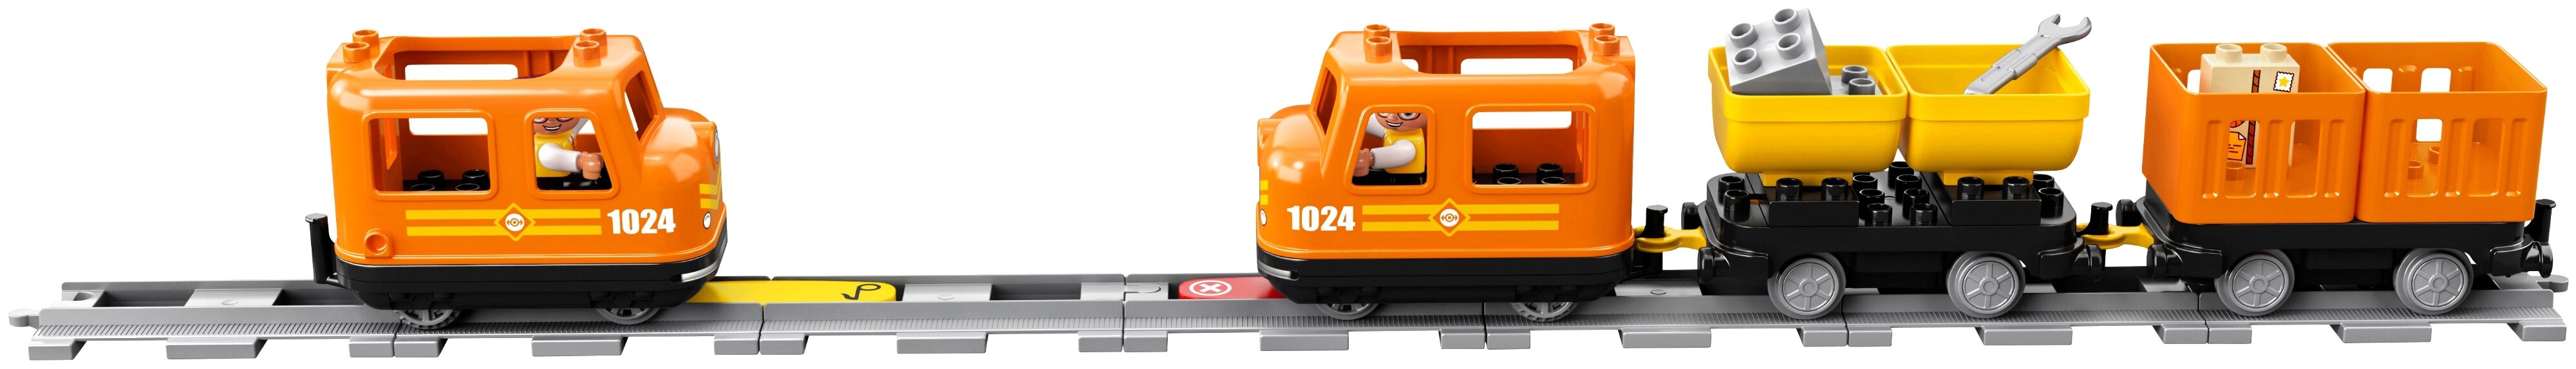 Конструктор LEGO Грузовой поезд 10875 заказать